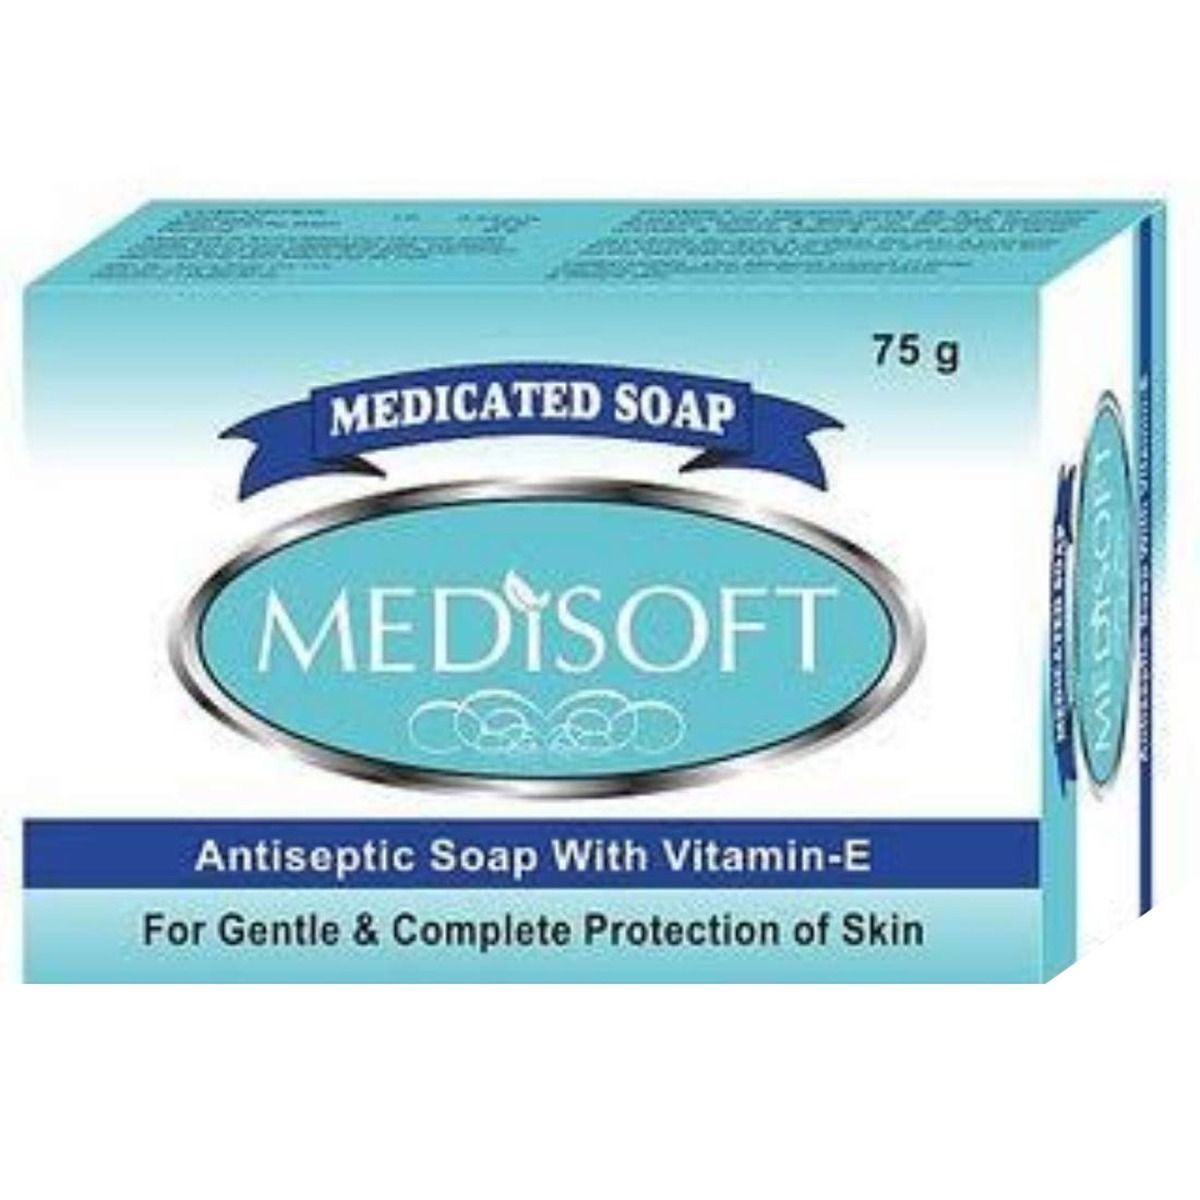 Buy Medisoft Medicated Soap, 75 gm Online